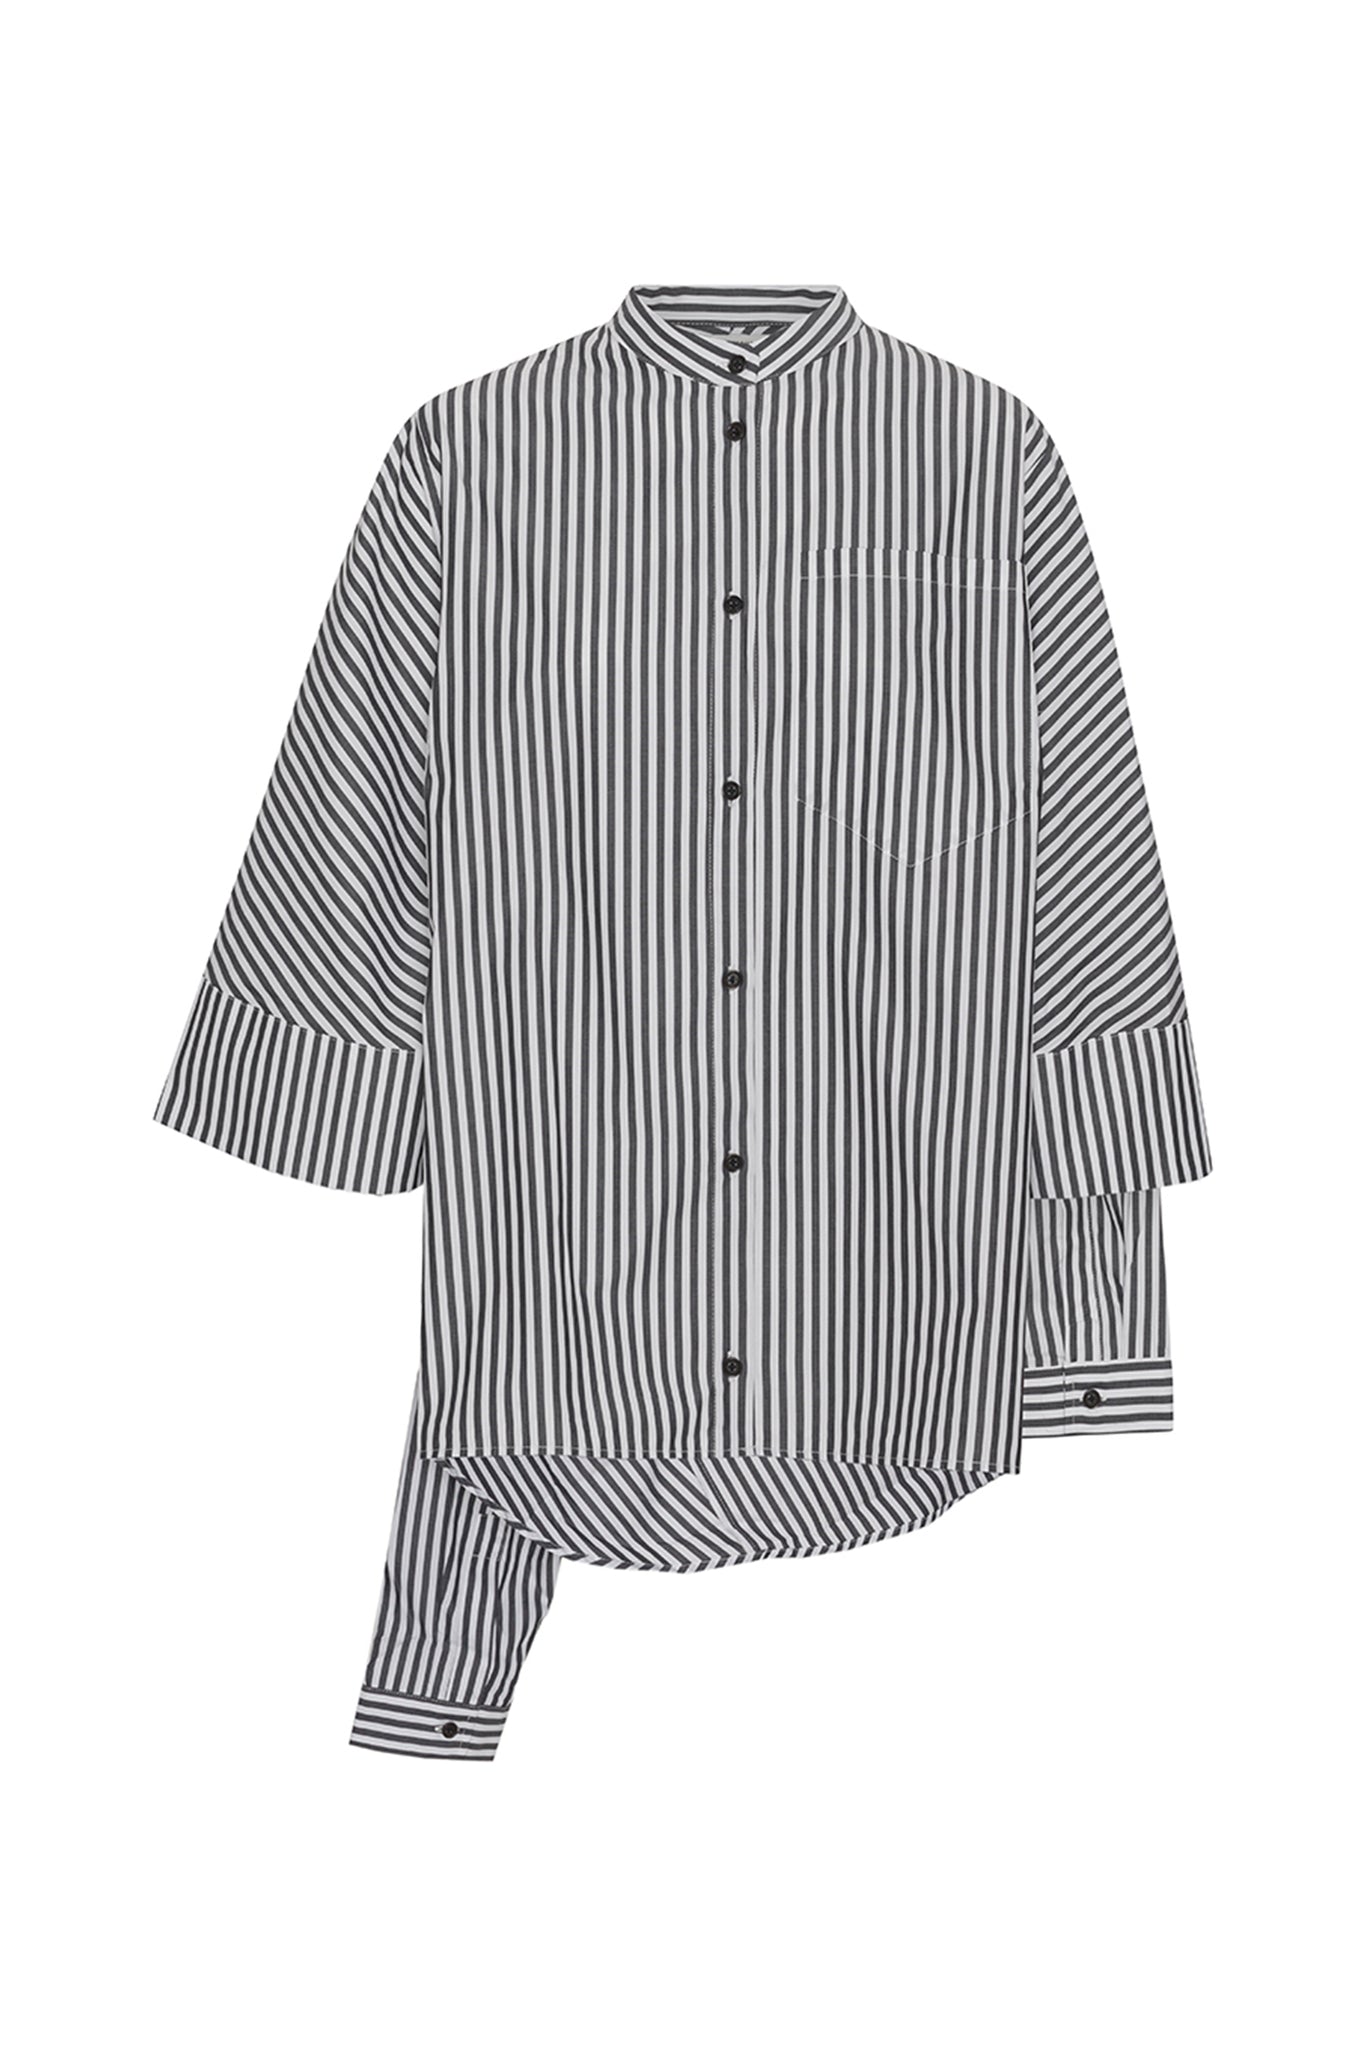 Double Shirt | Cotton | Black/White Stripes